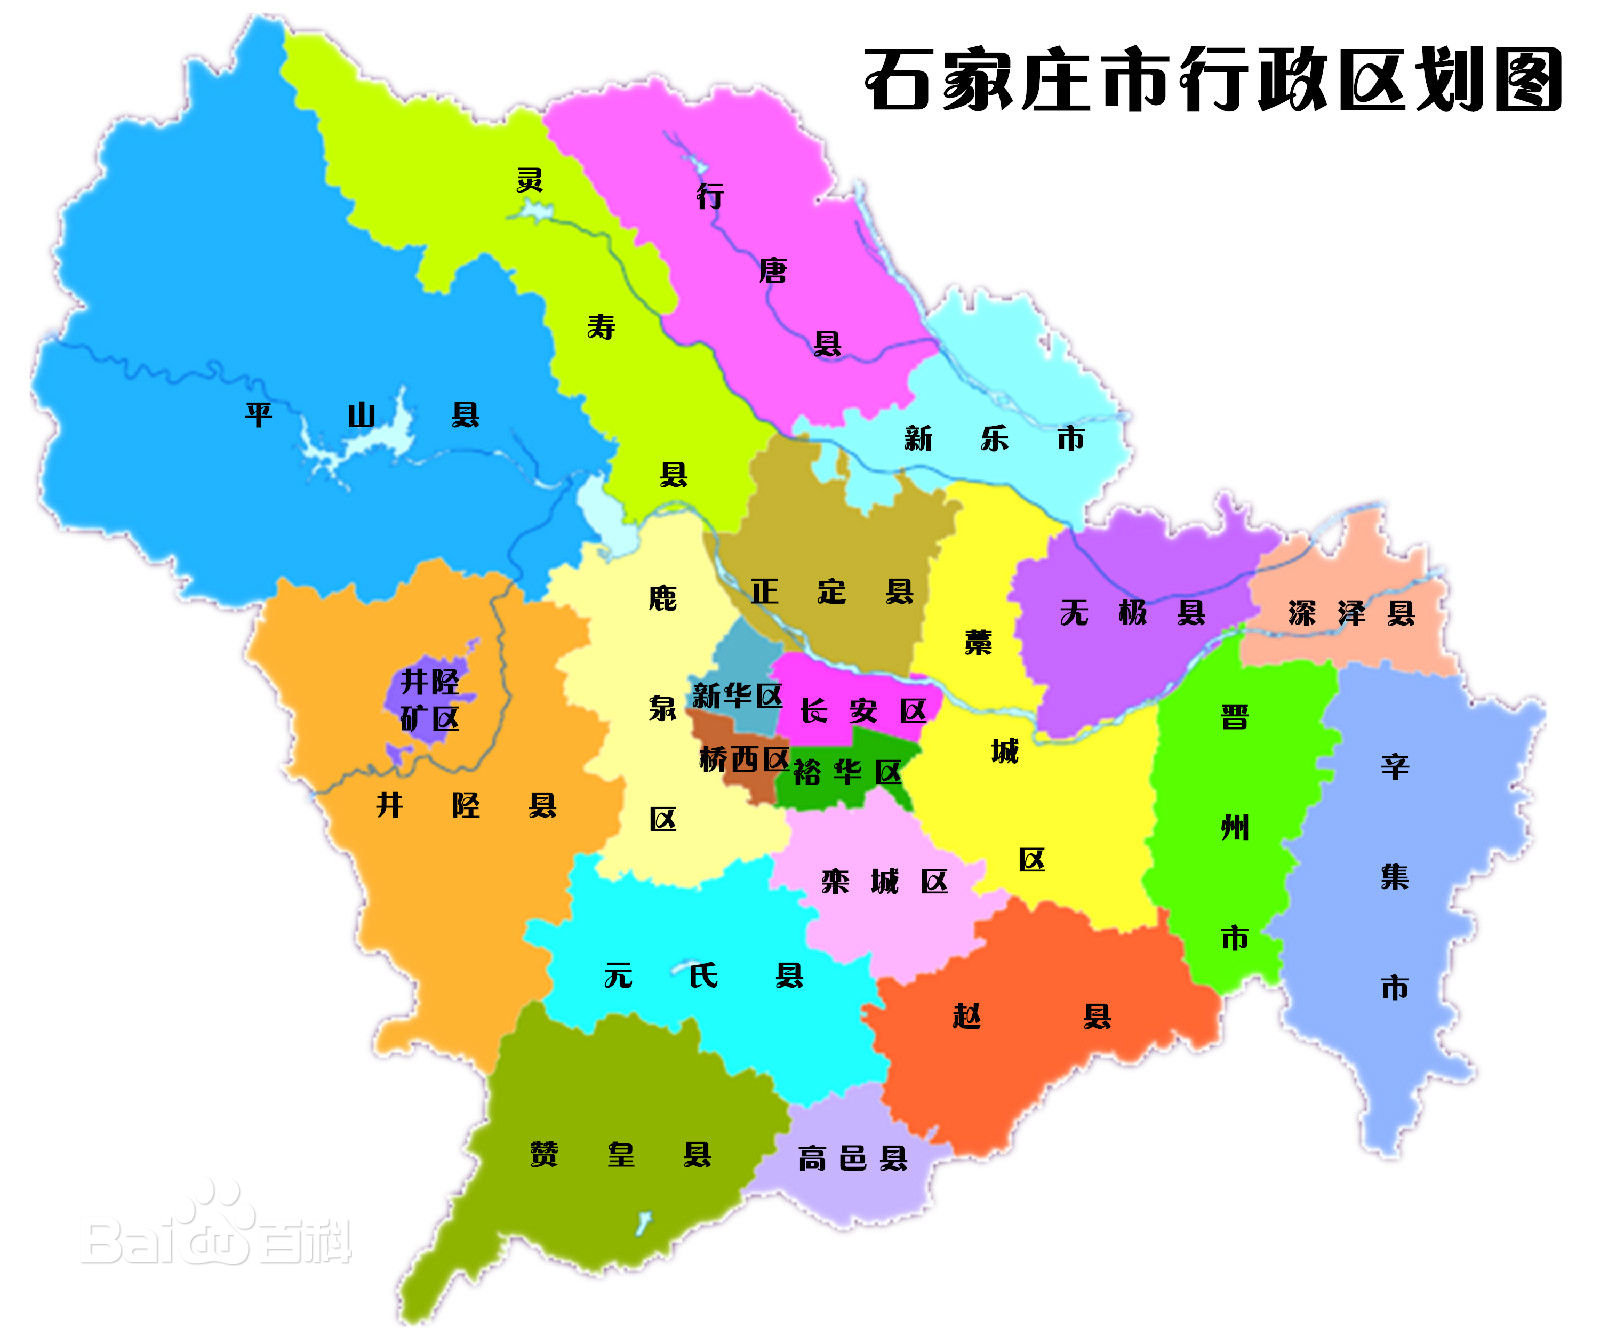 中国行政区划——石家庄行政区划